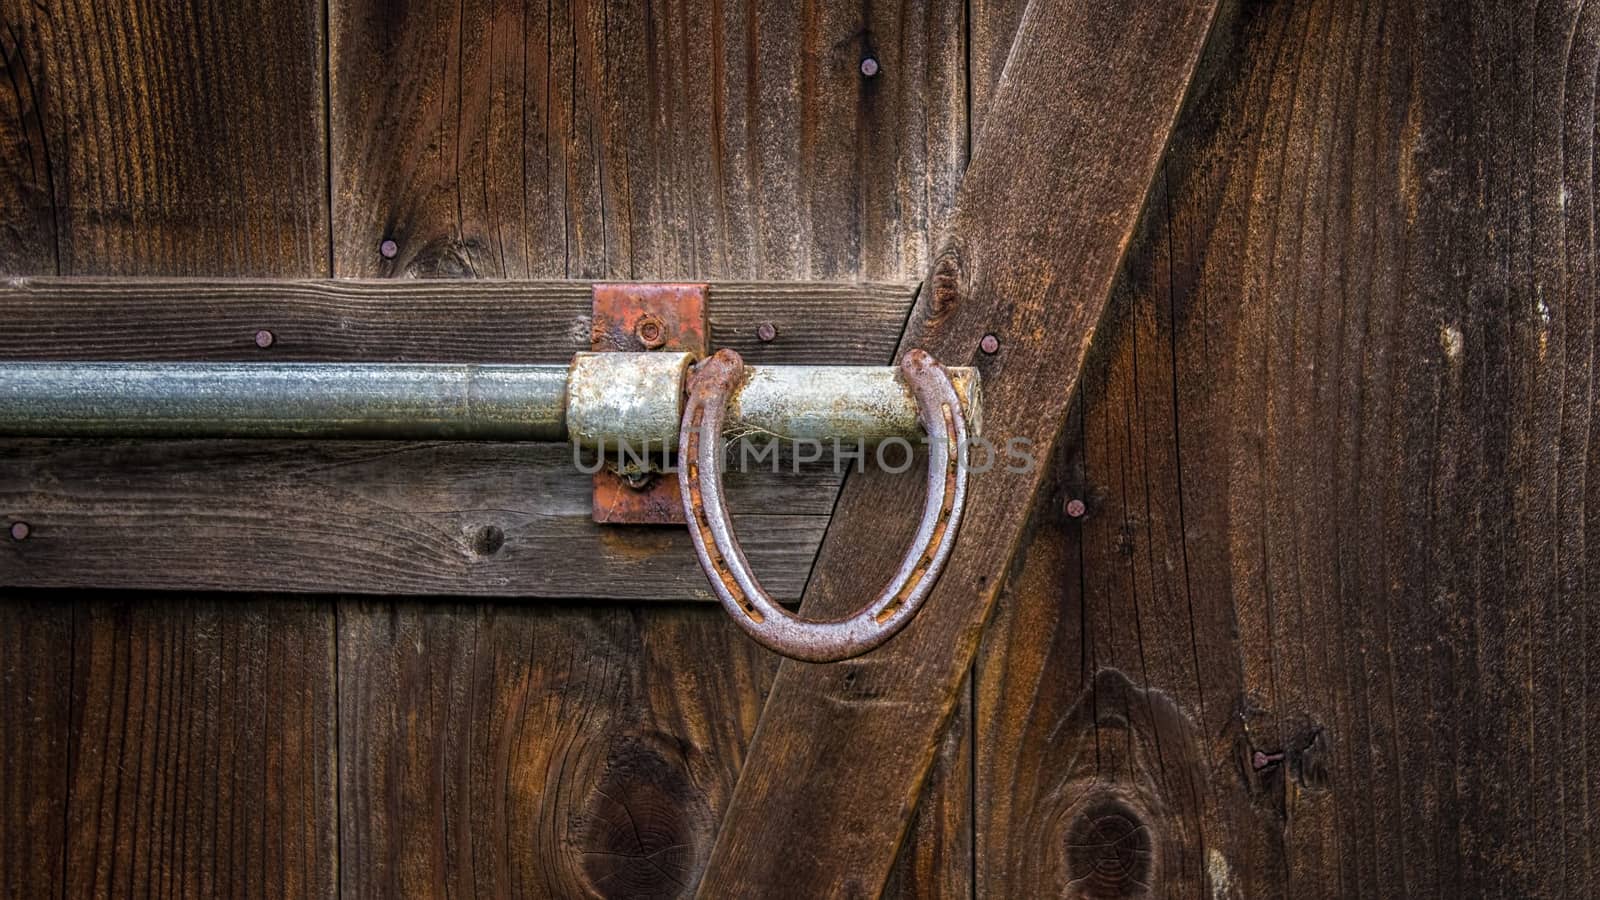 Horseshoe Barn Door Handle, Color Image by backyard_photography